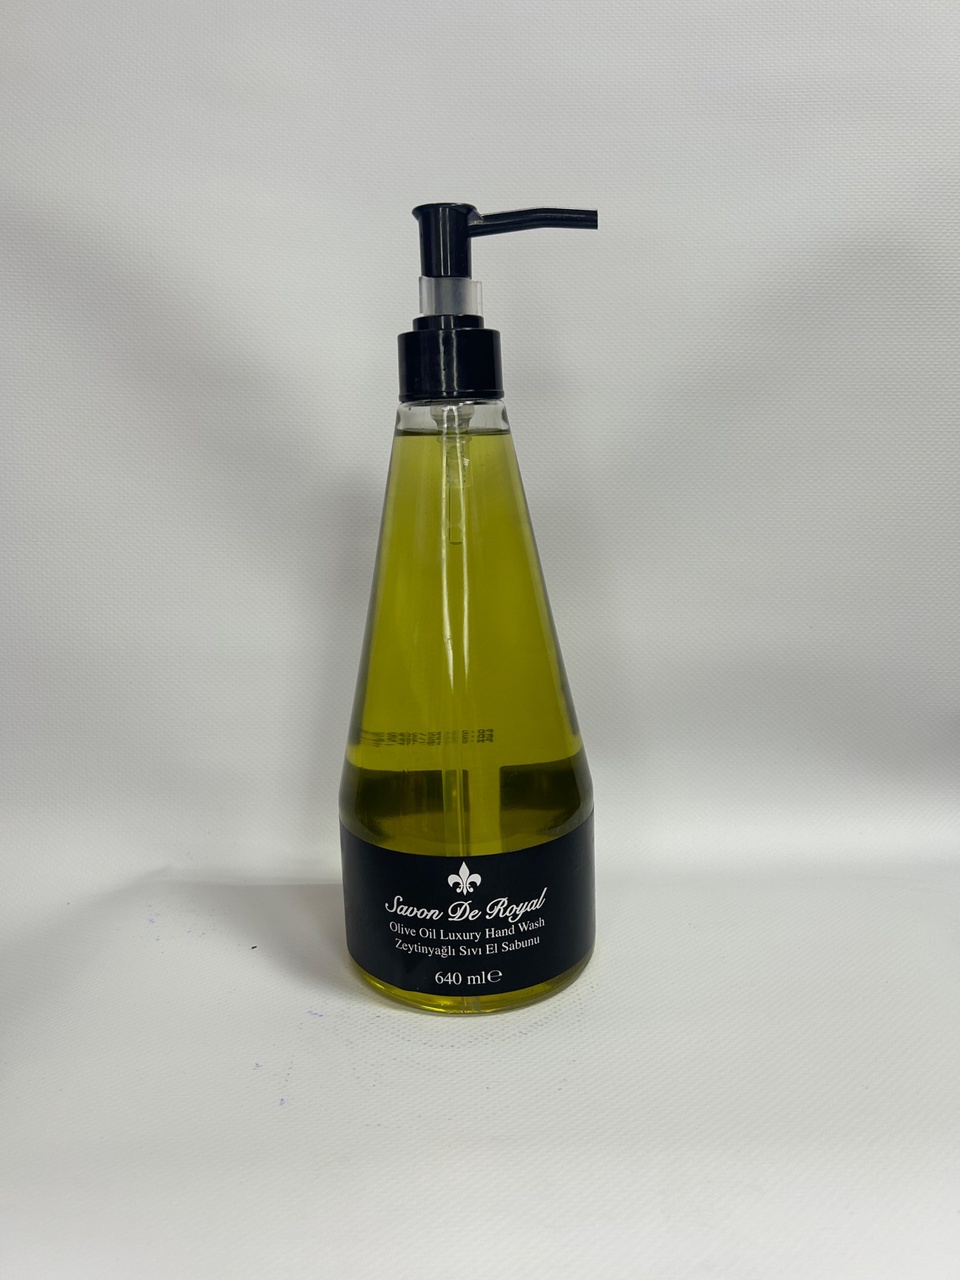 Жидкое мыло для рук Aksan Savon De Royal Olive Oil - 300 ₽, заказать онлайн.